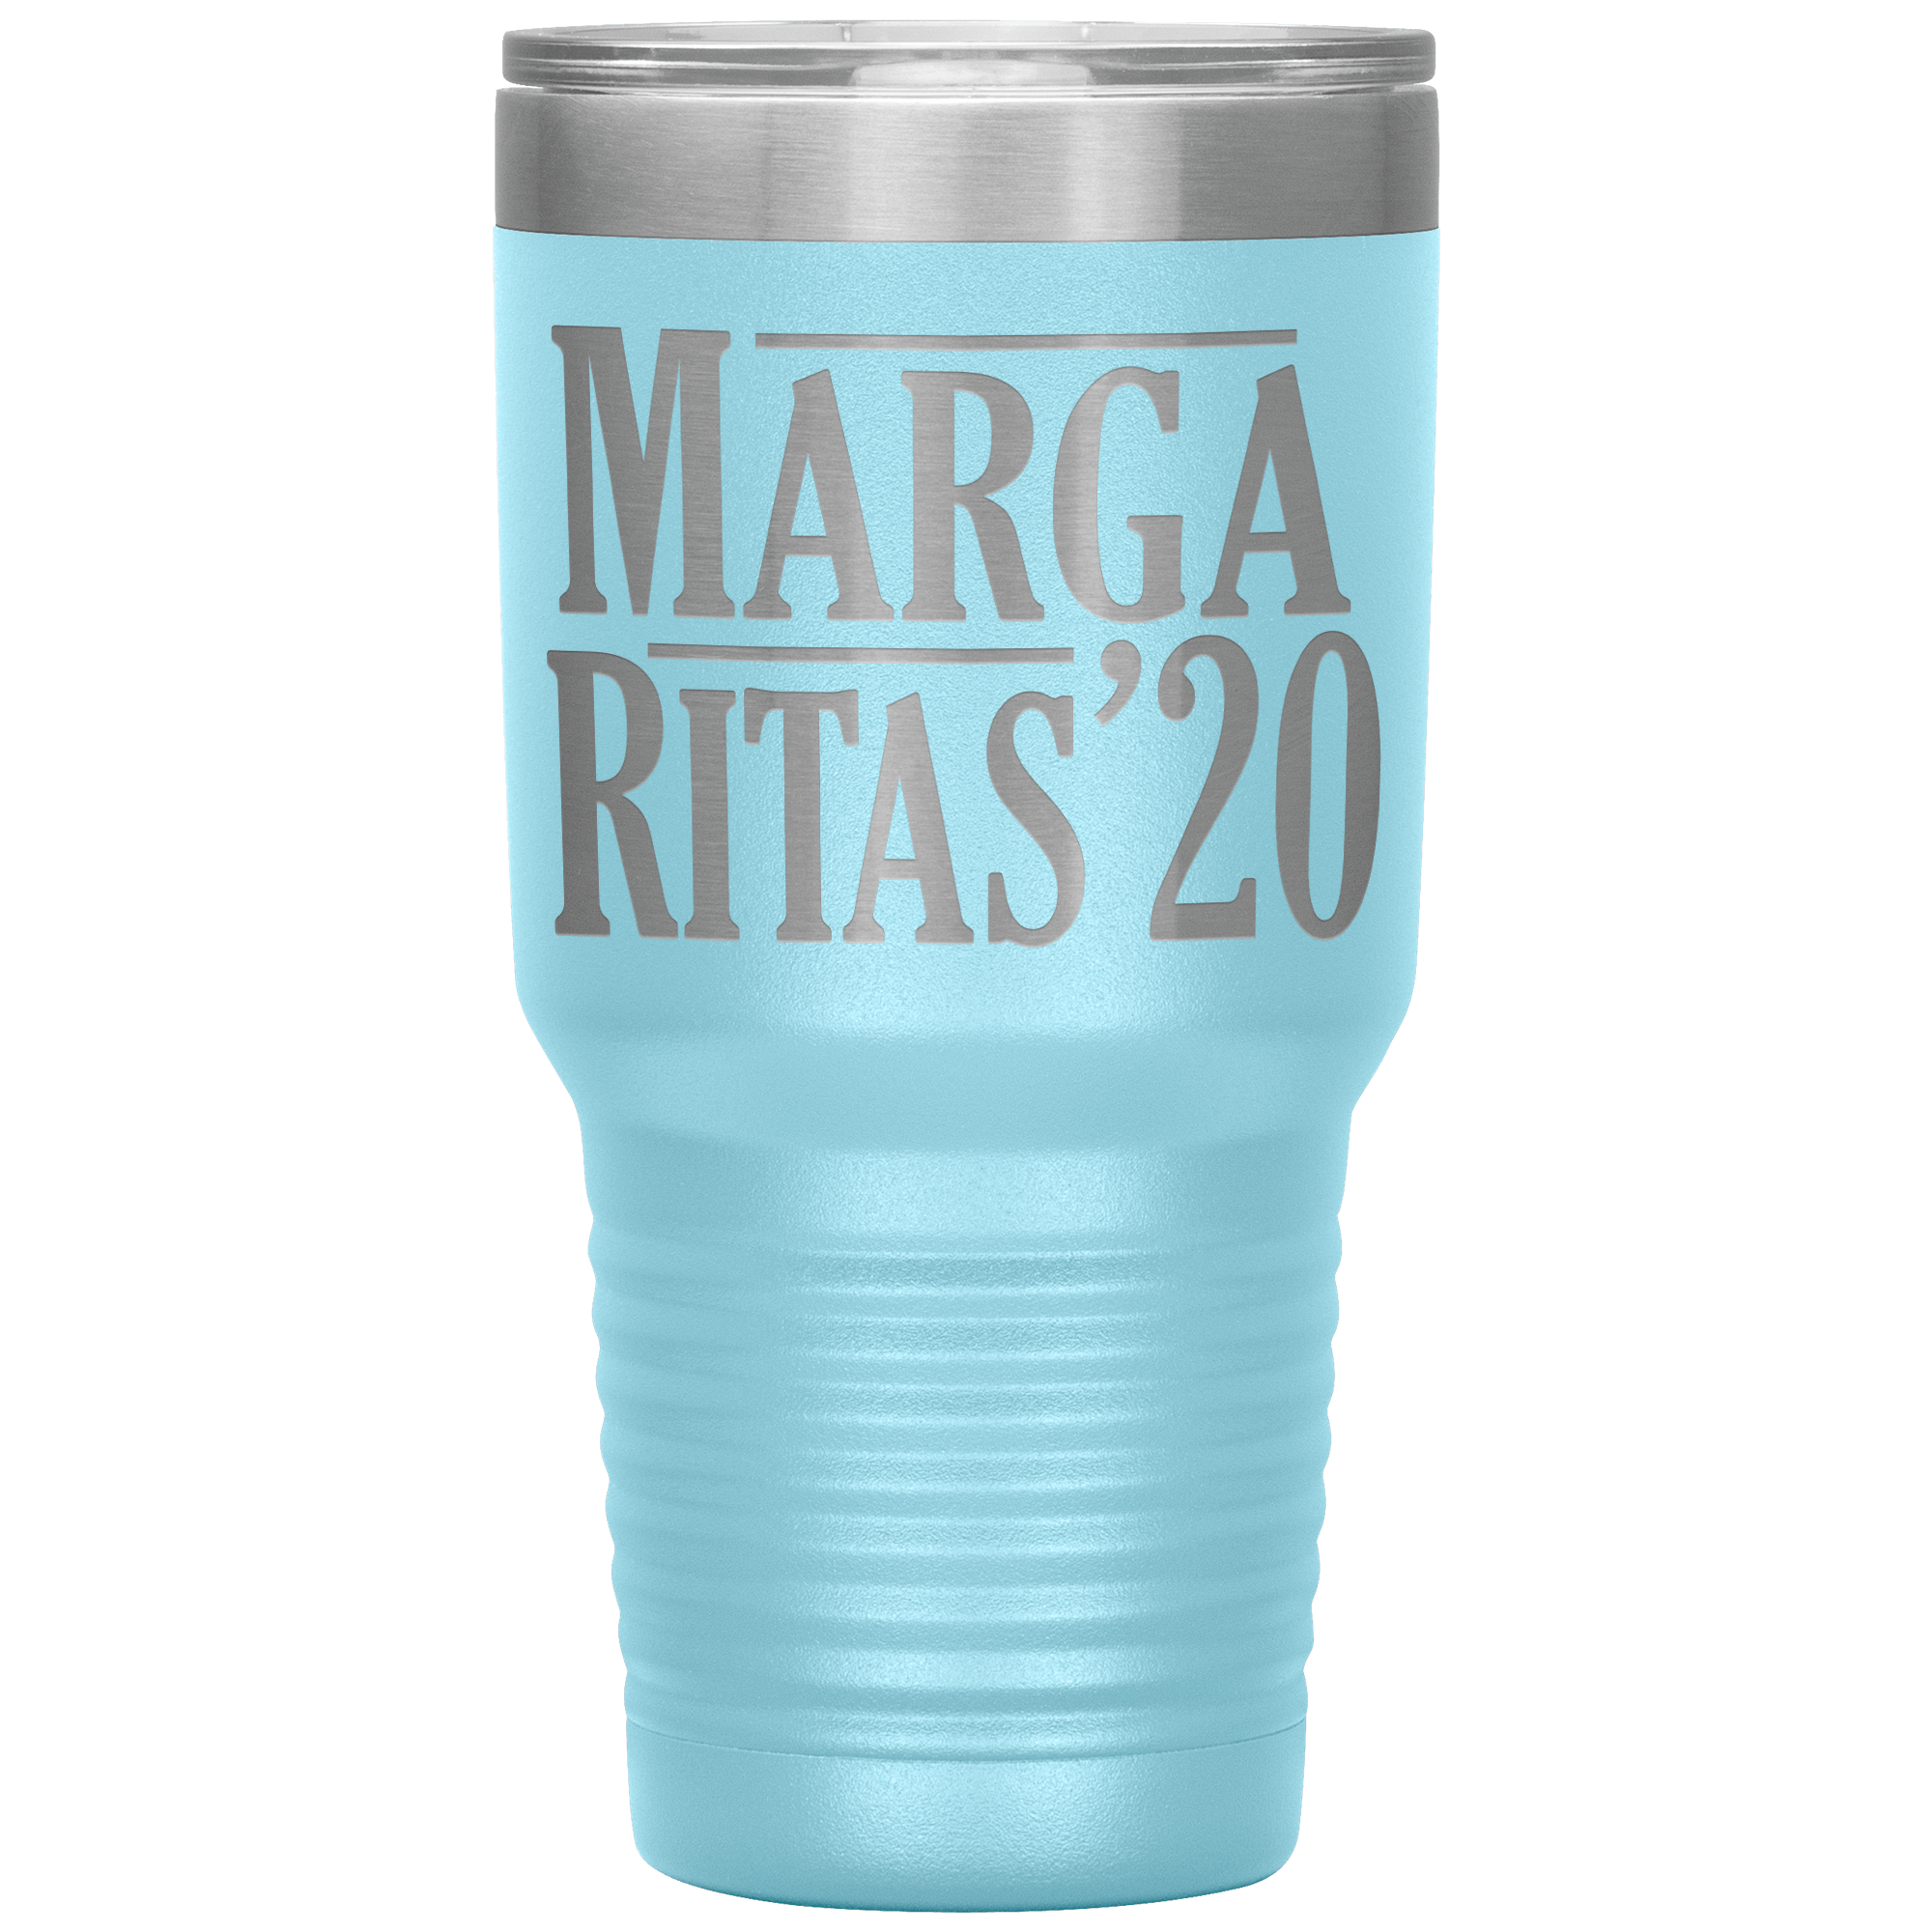 " MARGA RITAS 20 "  TUMBLER